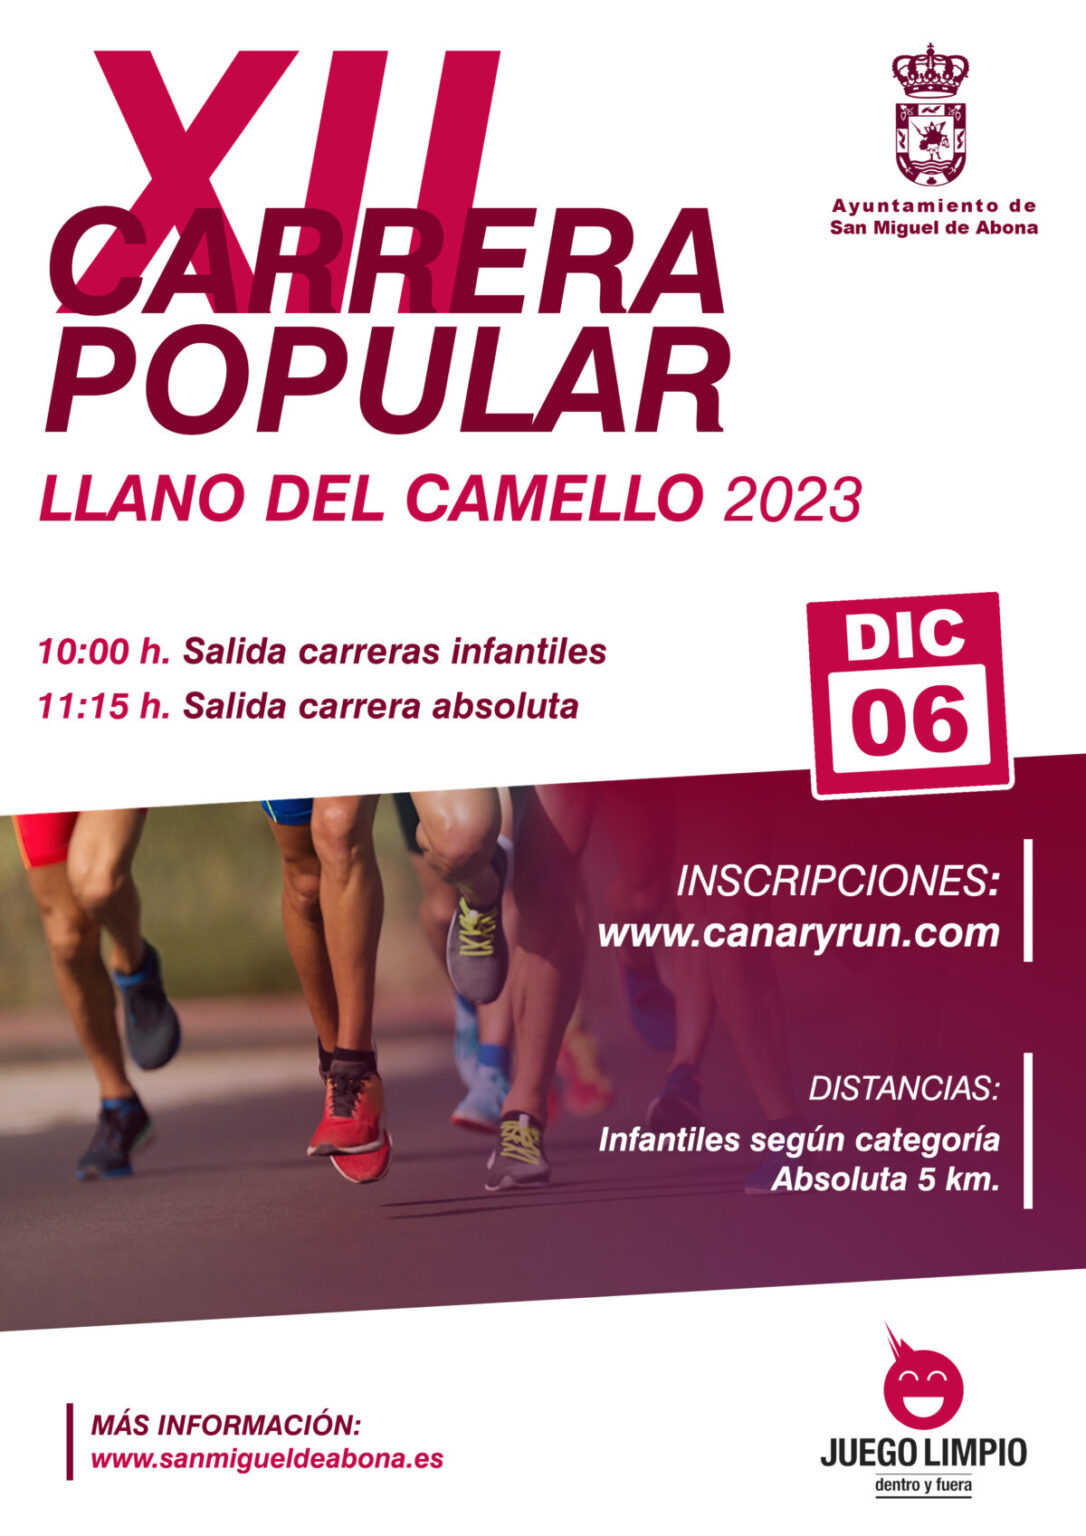 El Ayuntamiento de San Miguel de Abona anuncia la duodécima edición de la Carrera Popular de Llano del Camello.